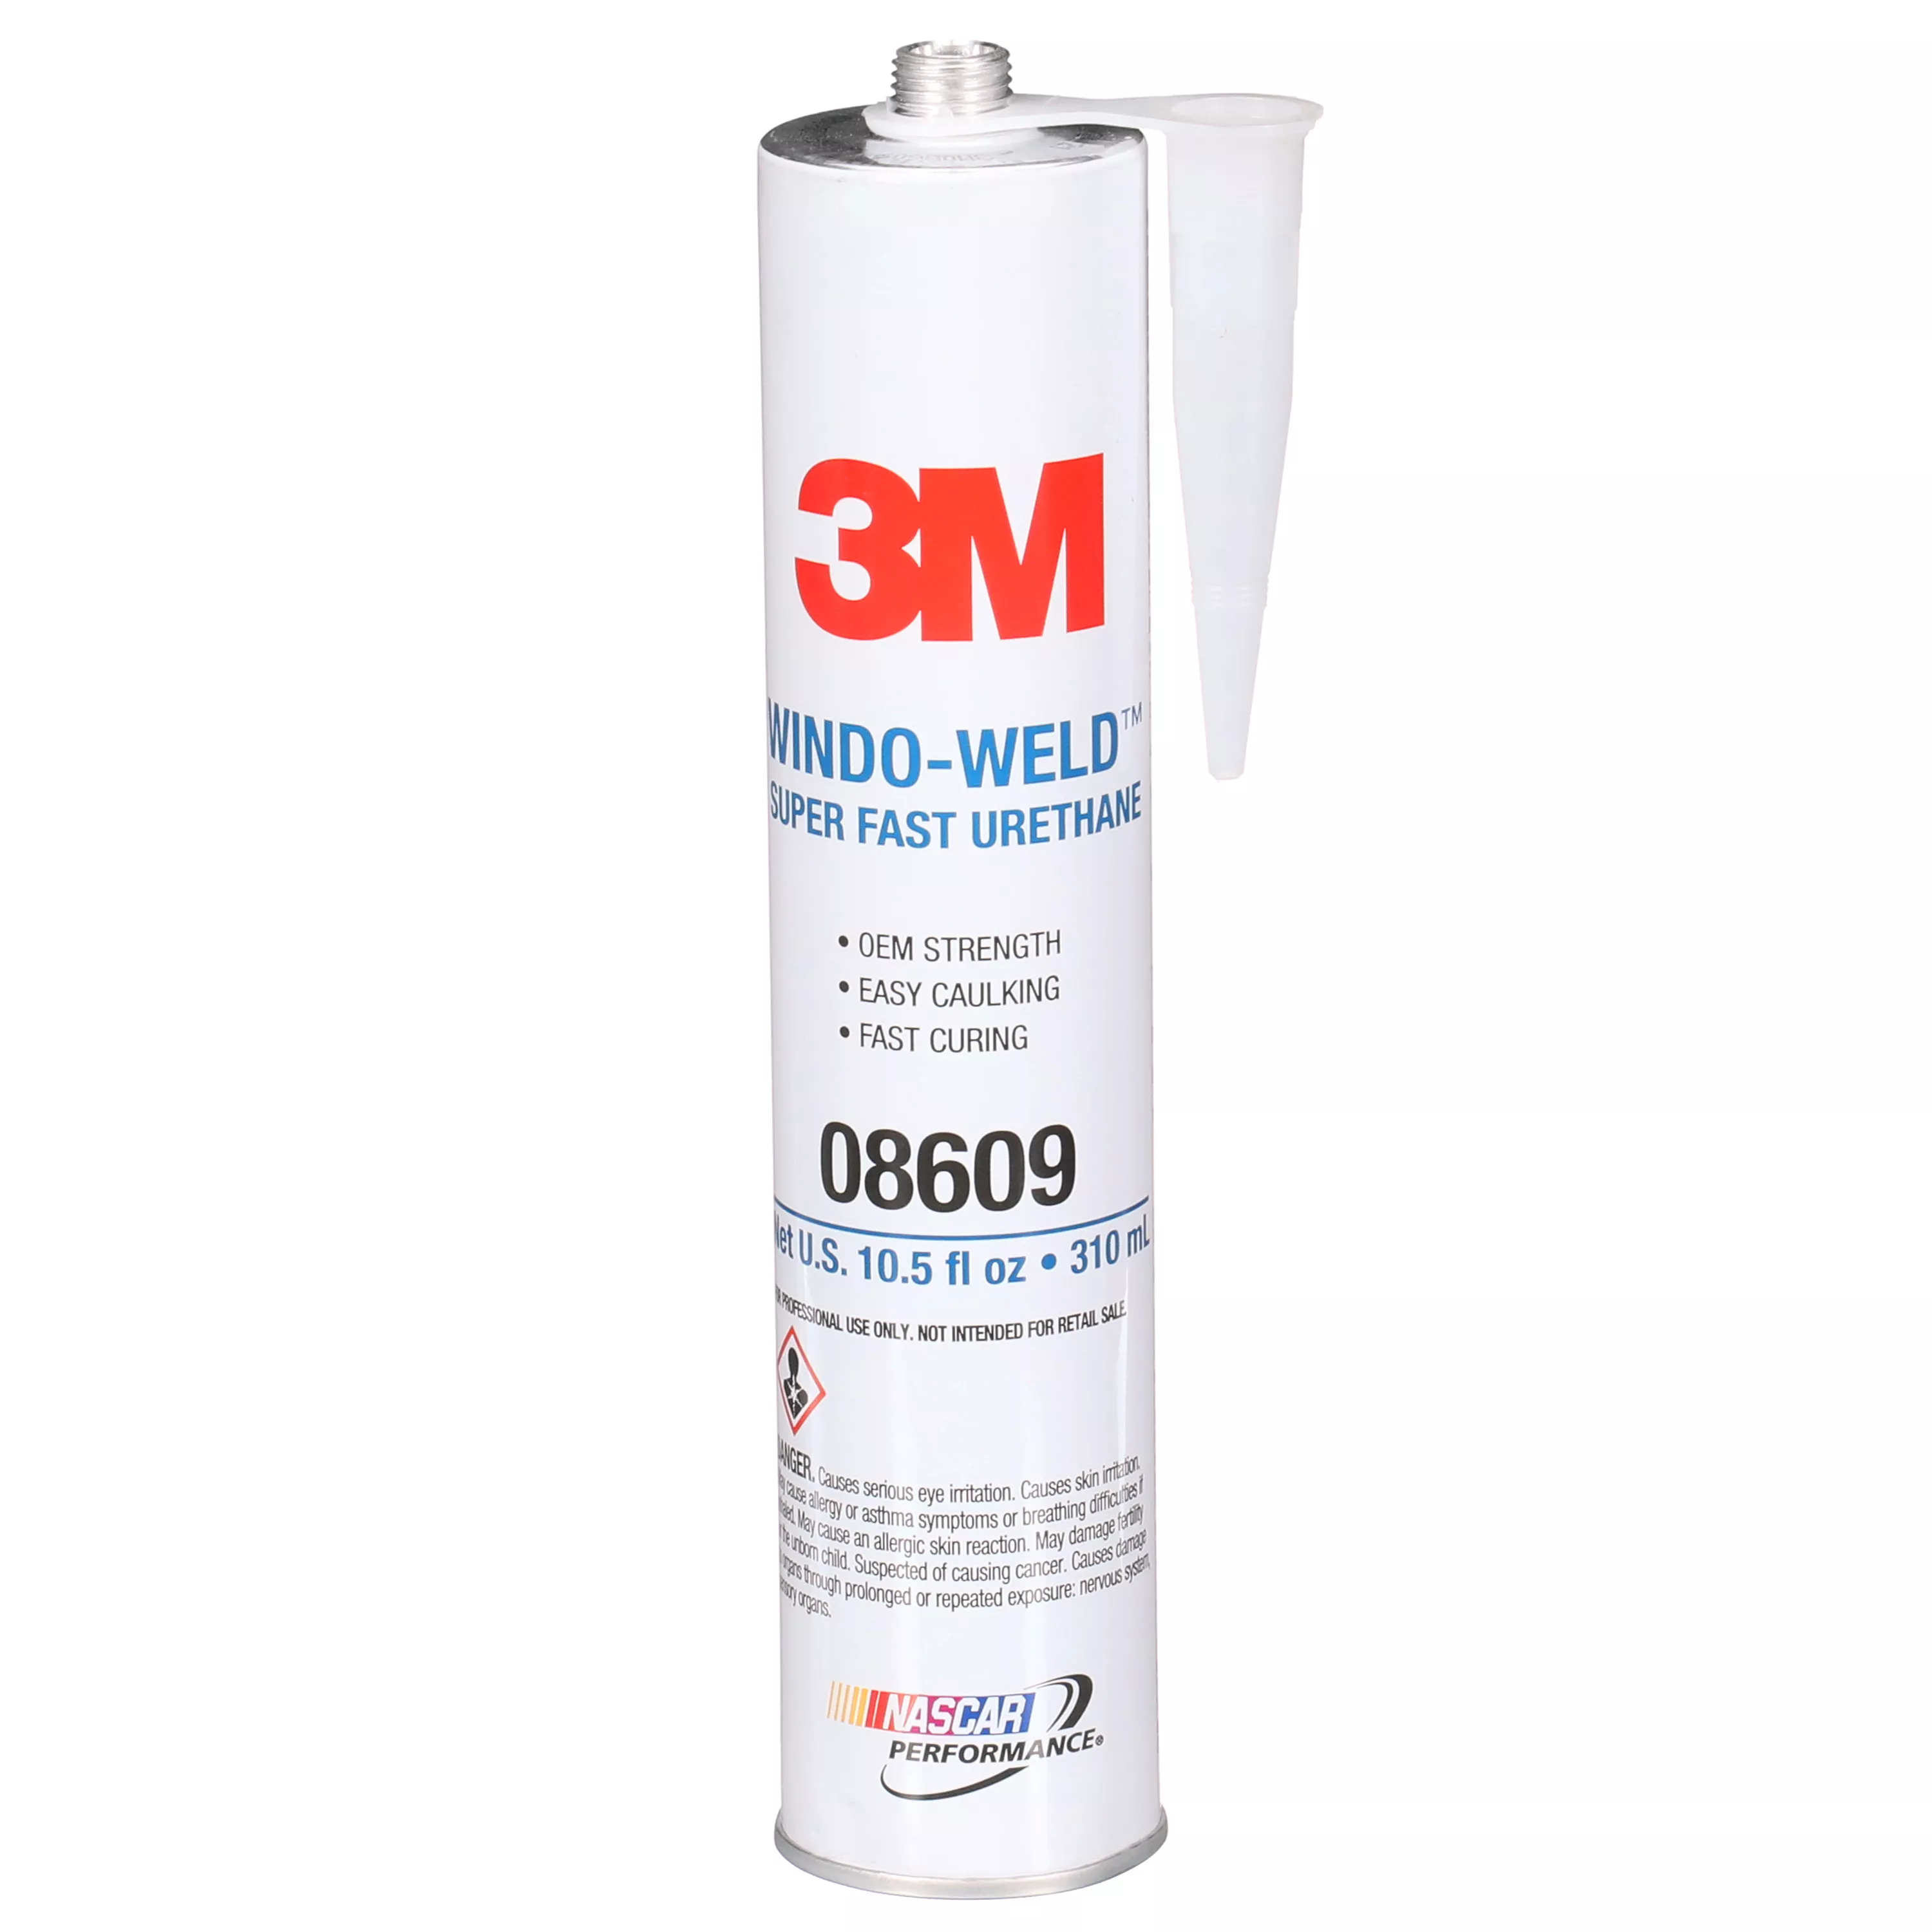 3M™ Windo-Weld™ Super Fast Urethane, 08609, Black, 10.5 fl oz Cartridge,
12 per case